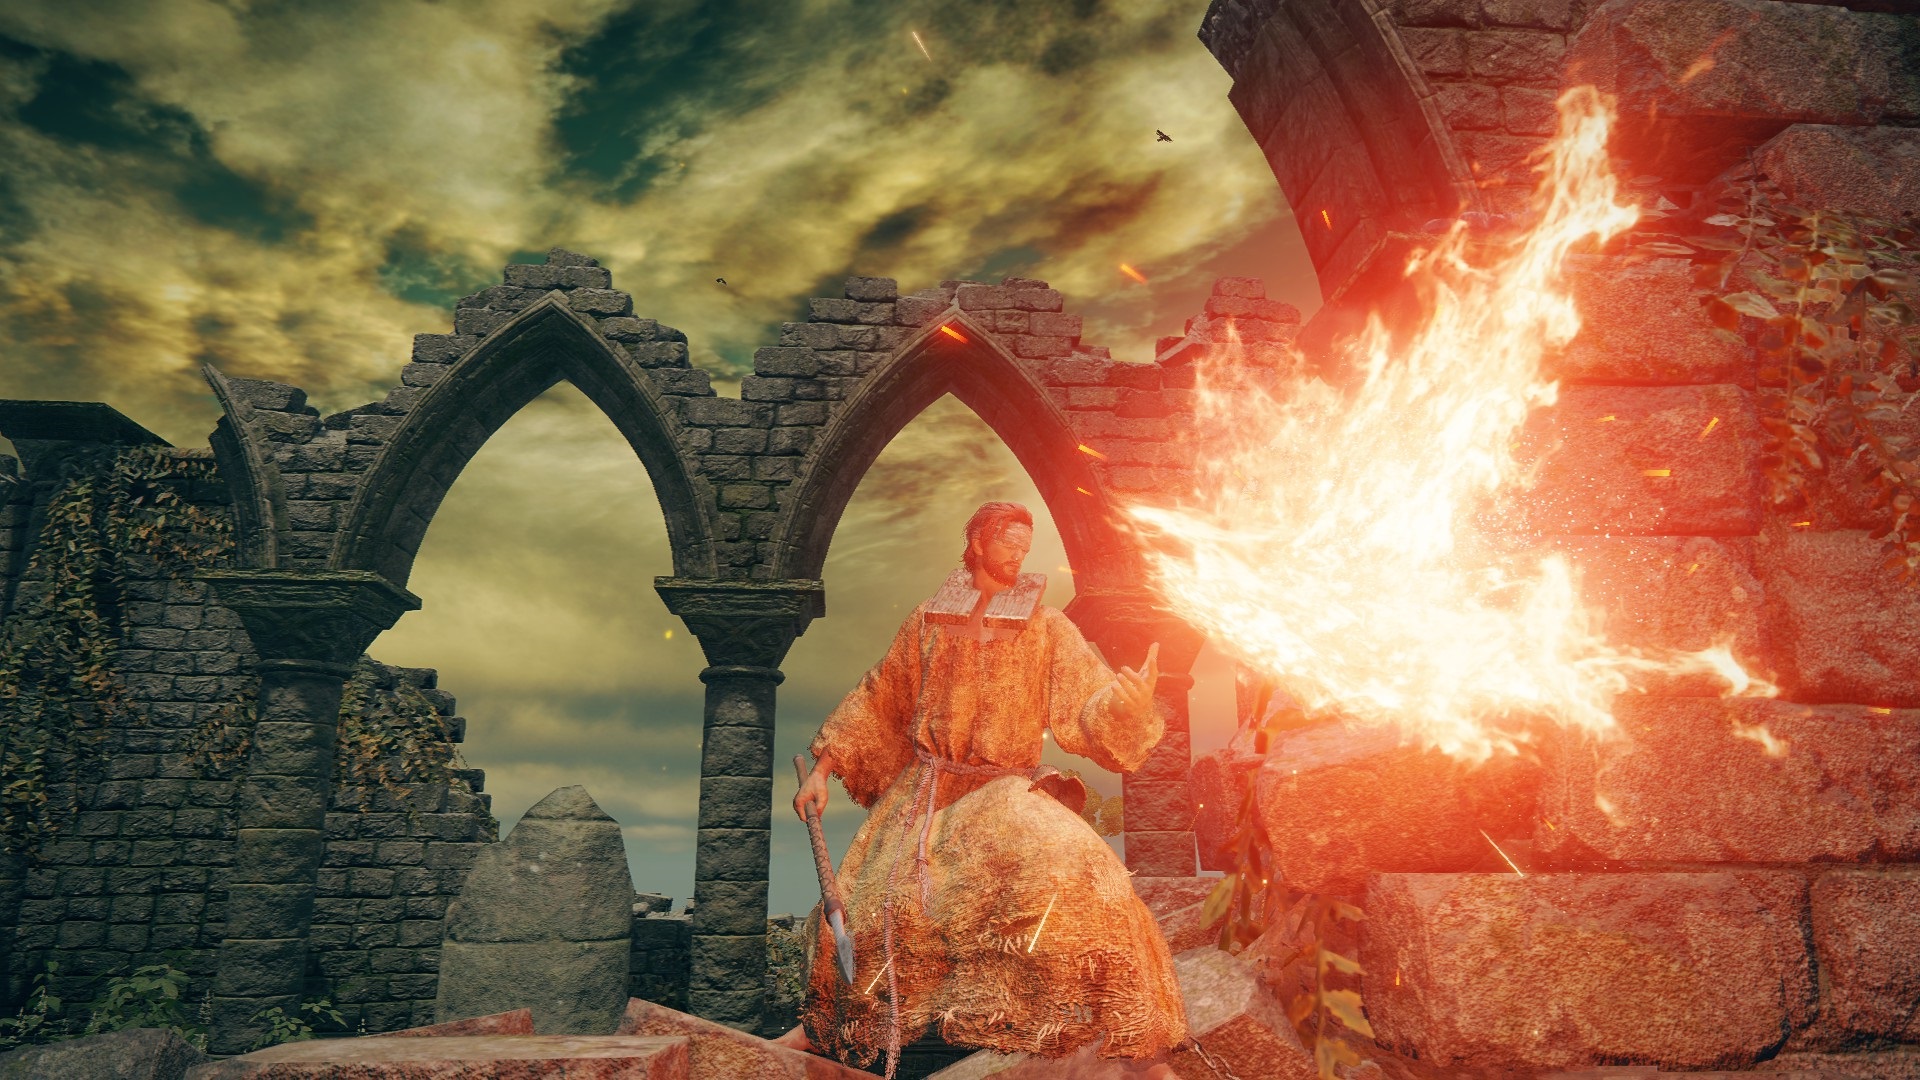 Класс Elden Ring — Пророк — игрок в стартовой мантии, несущий посох, произносит заклинание огня, стоя в церкви Эллех.